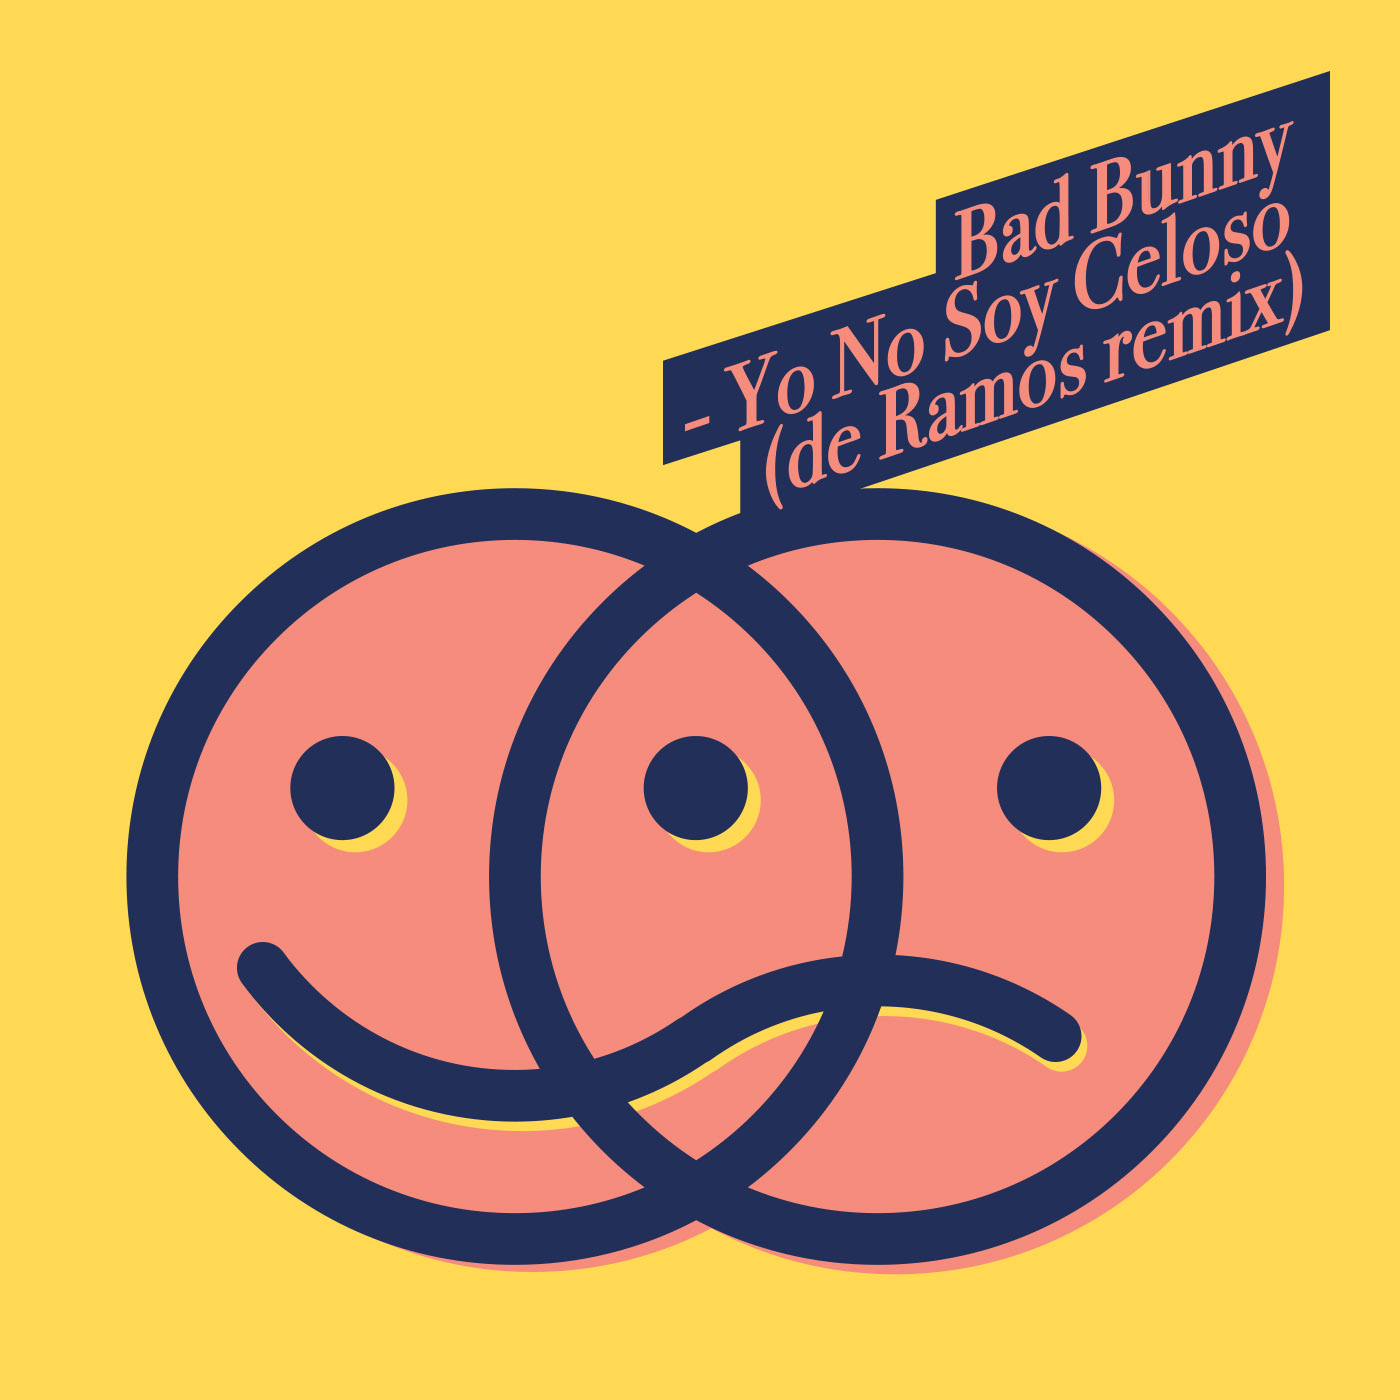 Bad Bunny - Yo No Soy Celoso (de Ramos remix)